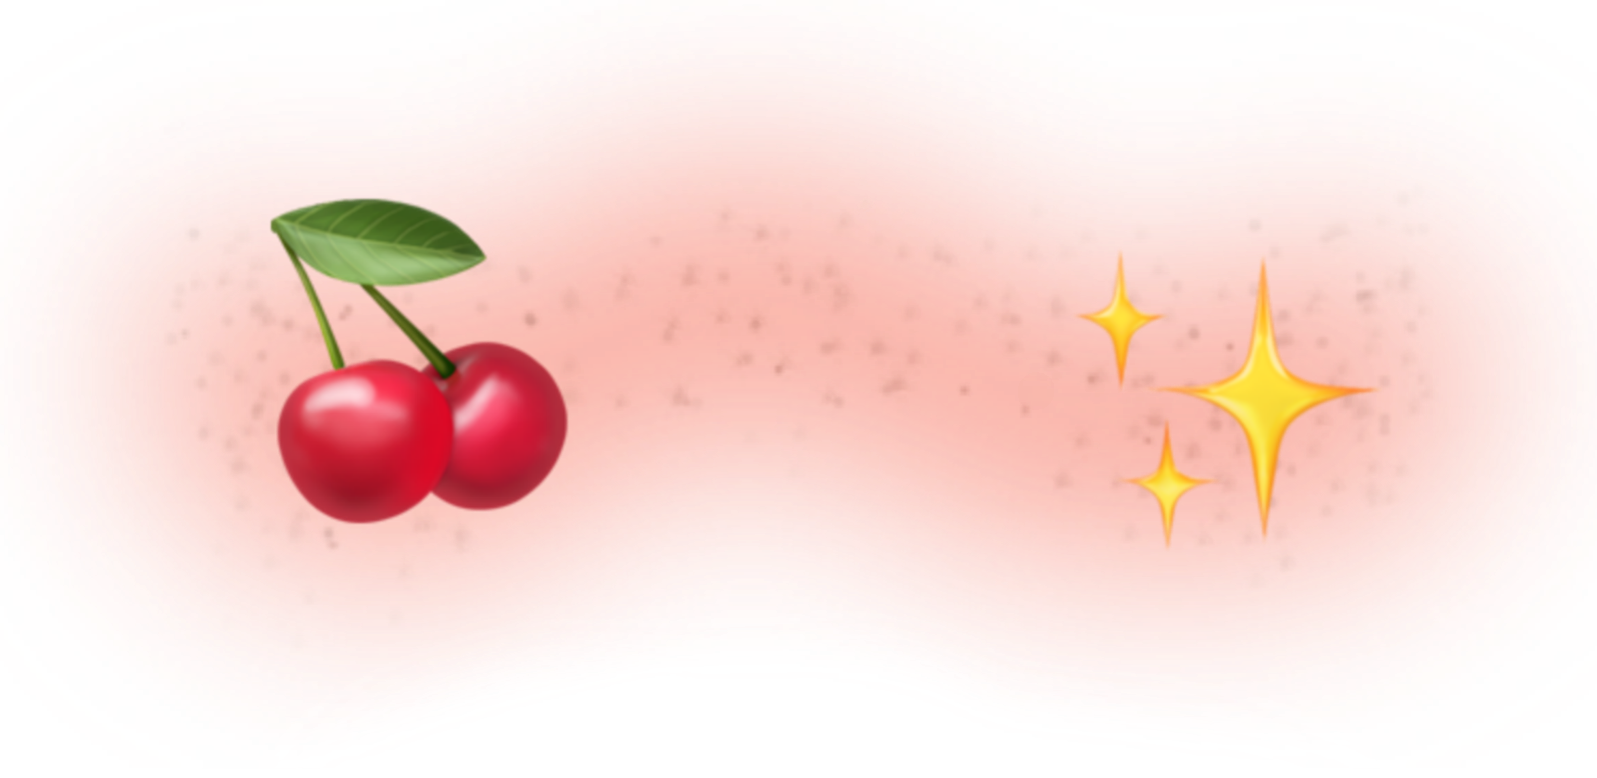 freetoedit cherries starsemoji sticker by @hayetboucherit08